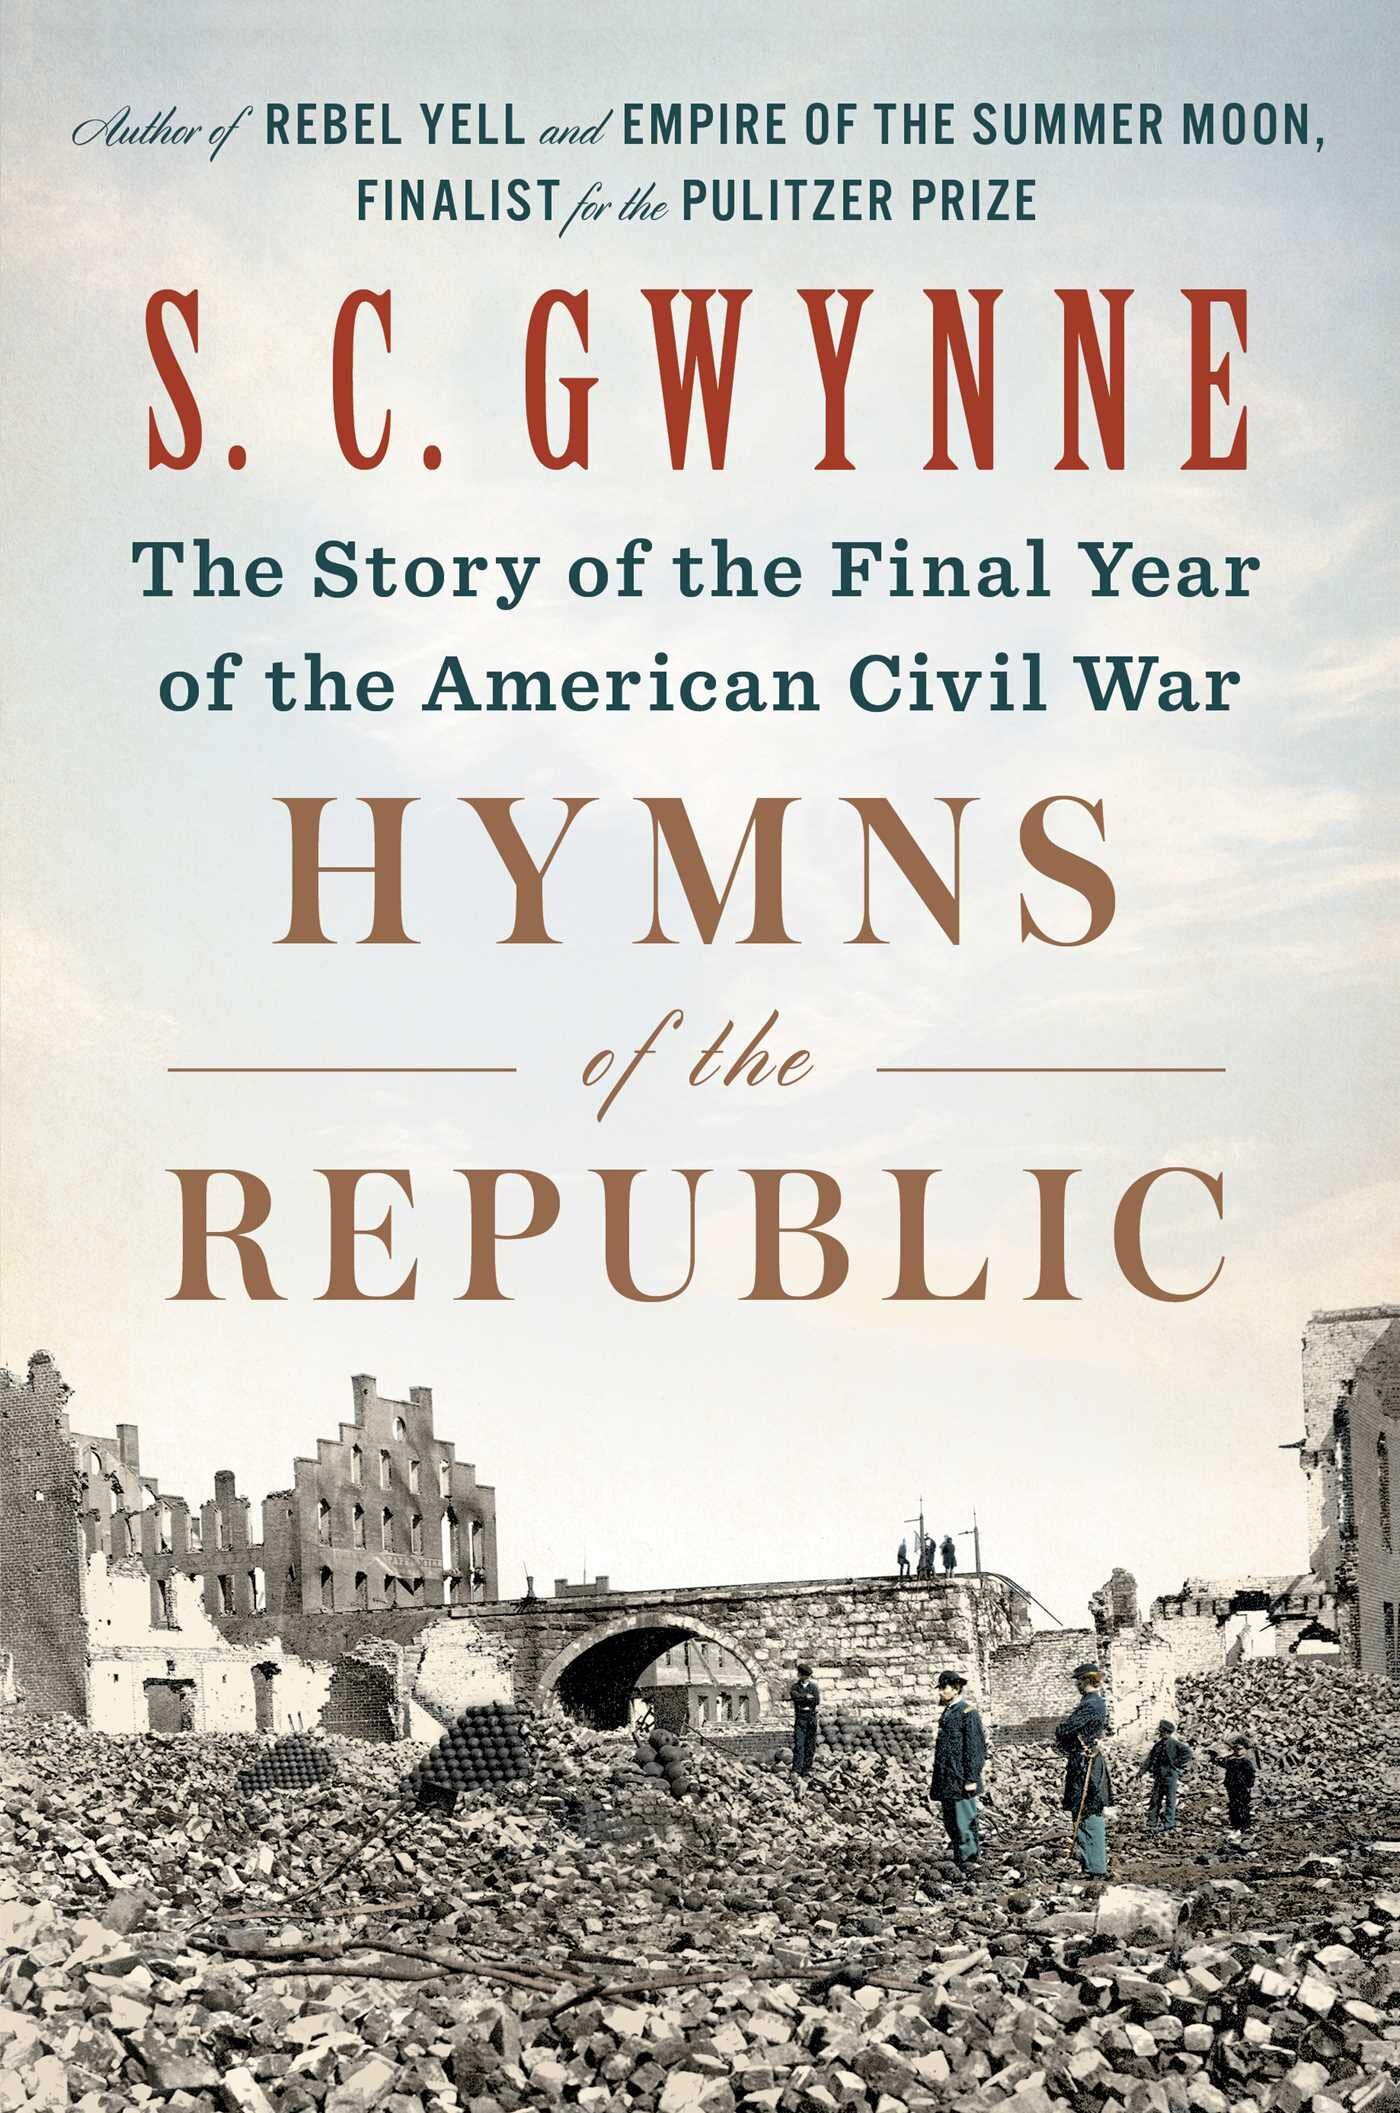 Civil War Monitor - Hymns of the Republic (S. C. Gwynne)